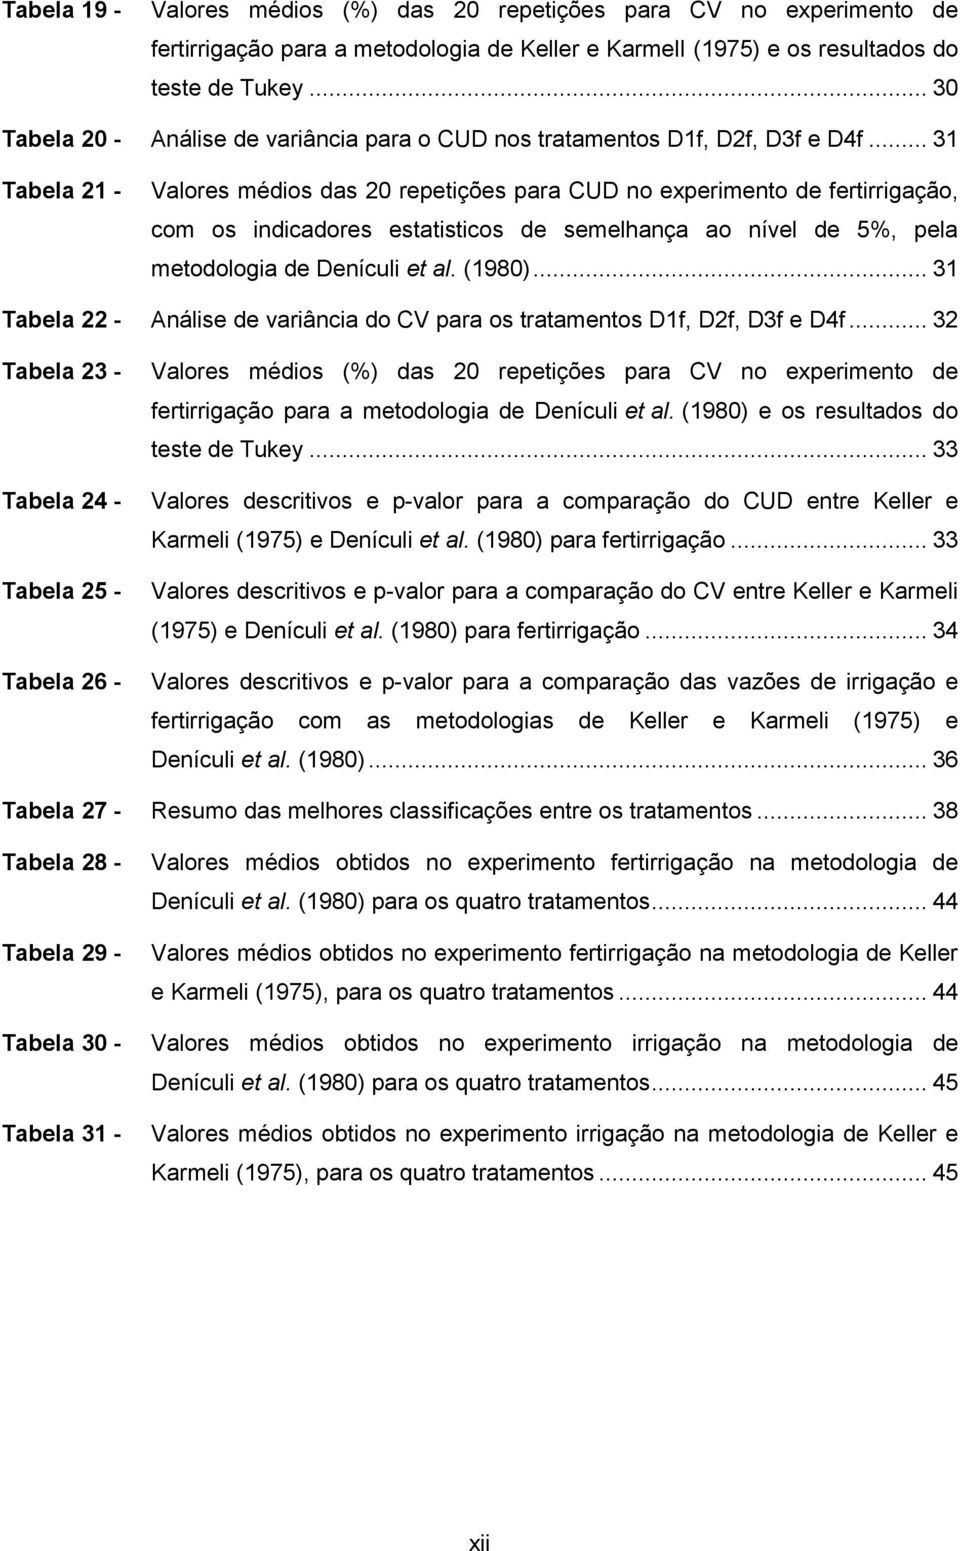 .. 31 Tabela 21 - Valores médios das 20 repetições para CUD no experimento de fertirrigação, com os indicadores estatisticos de semelhança ao nível de 5%, pela metodologia de Denículi et al. (1980).